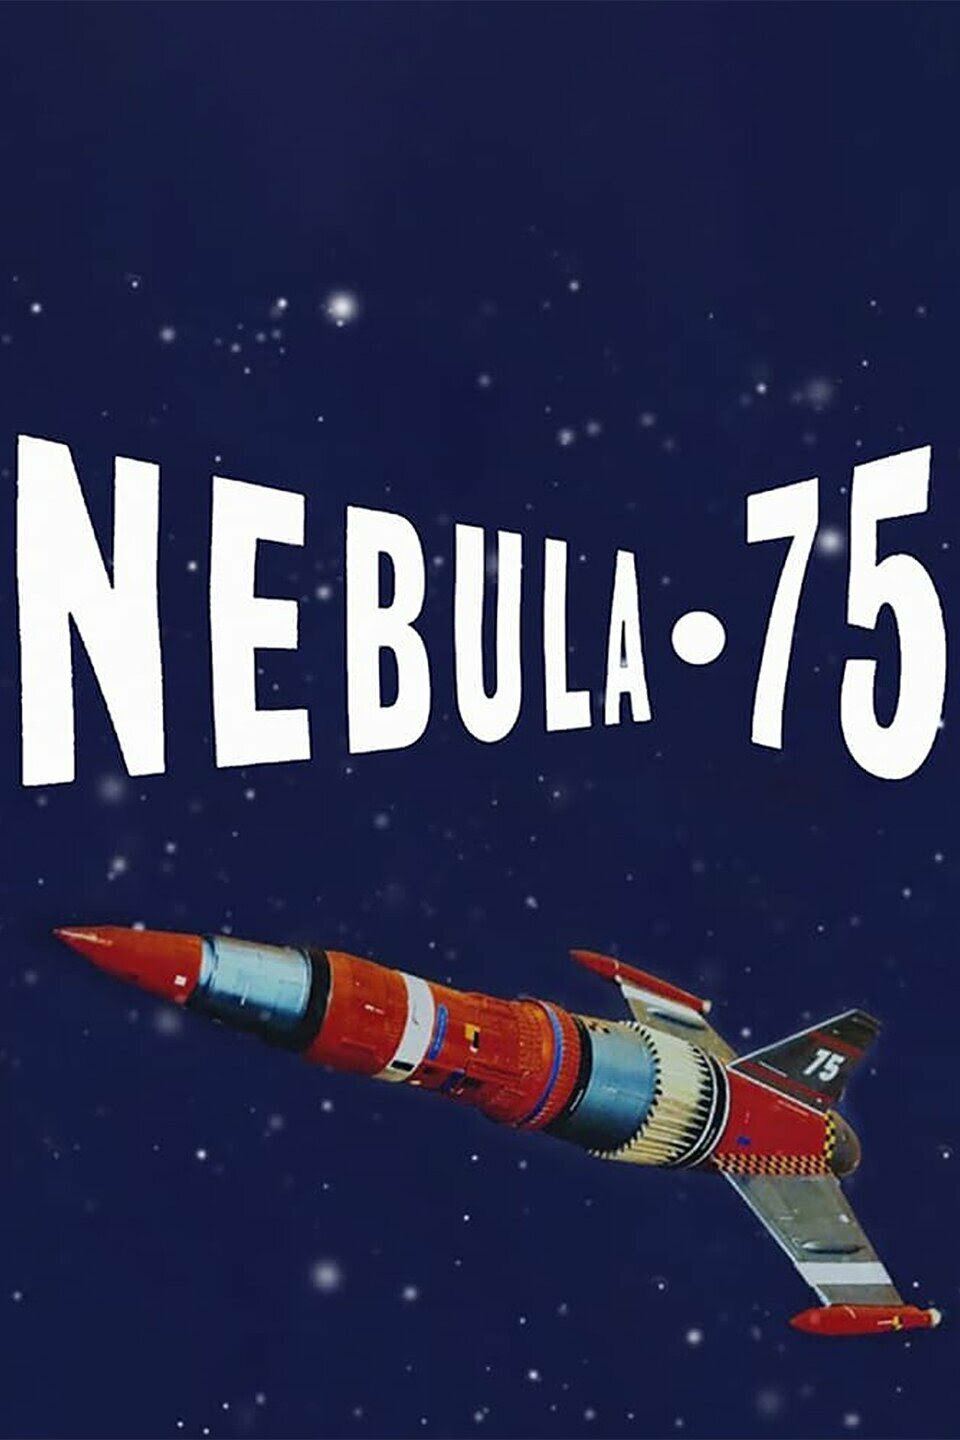 Nebula-75 ne zaman